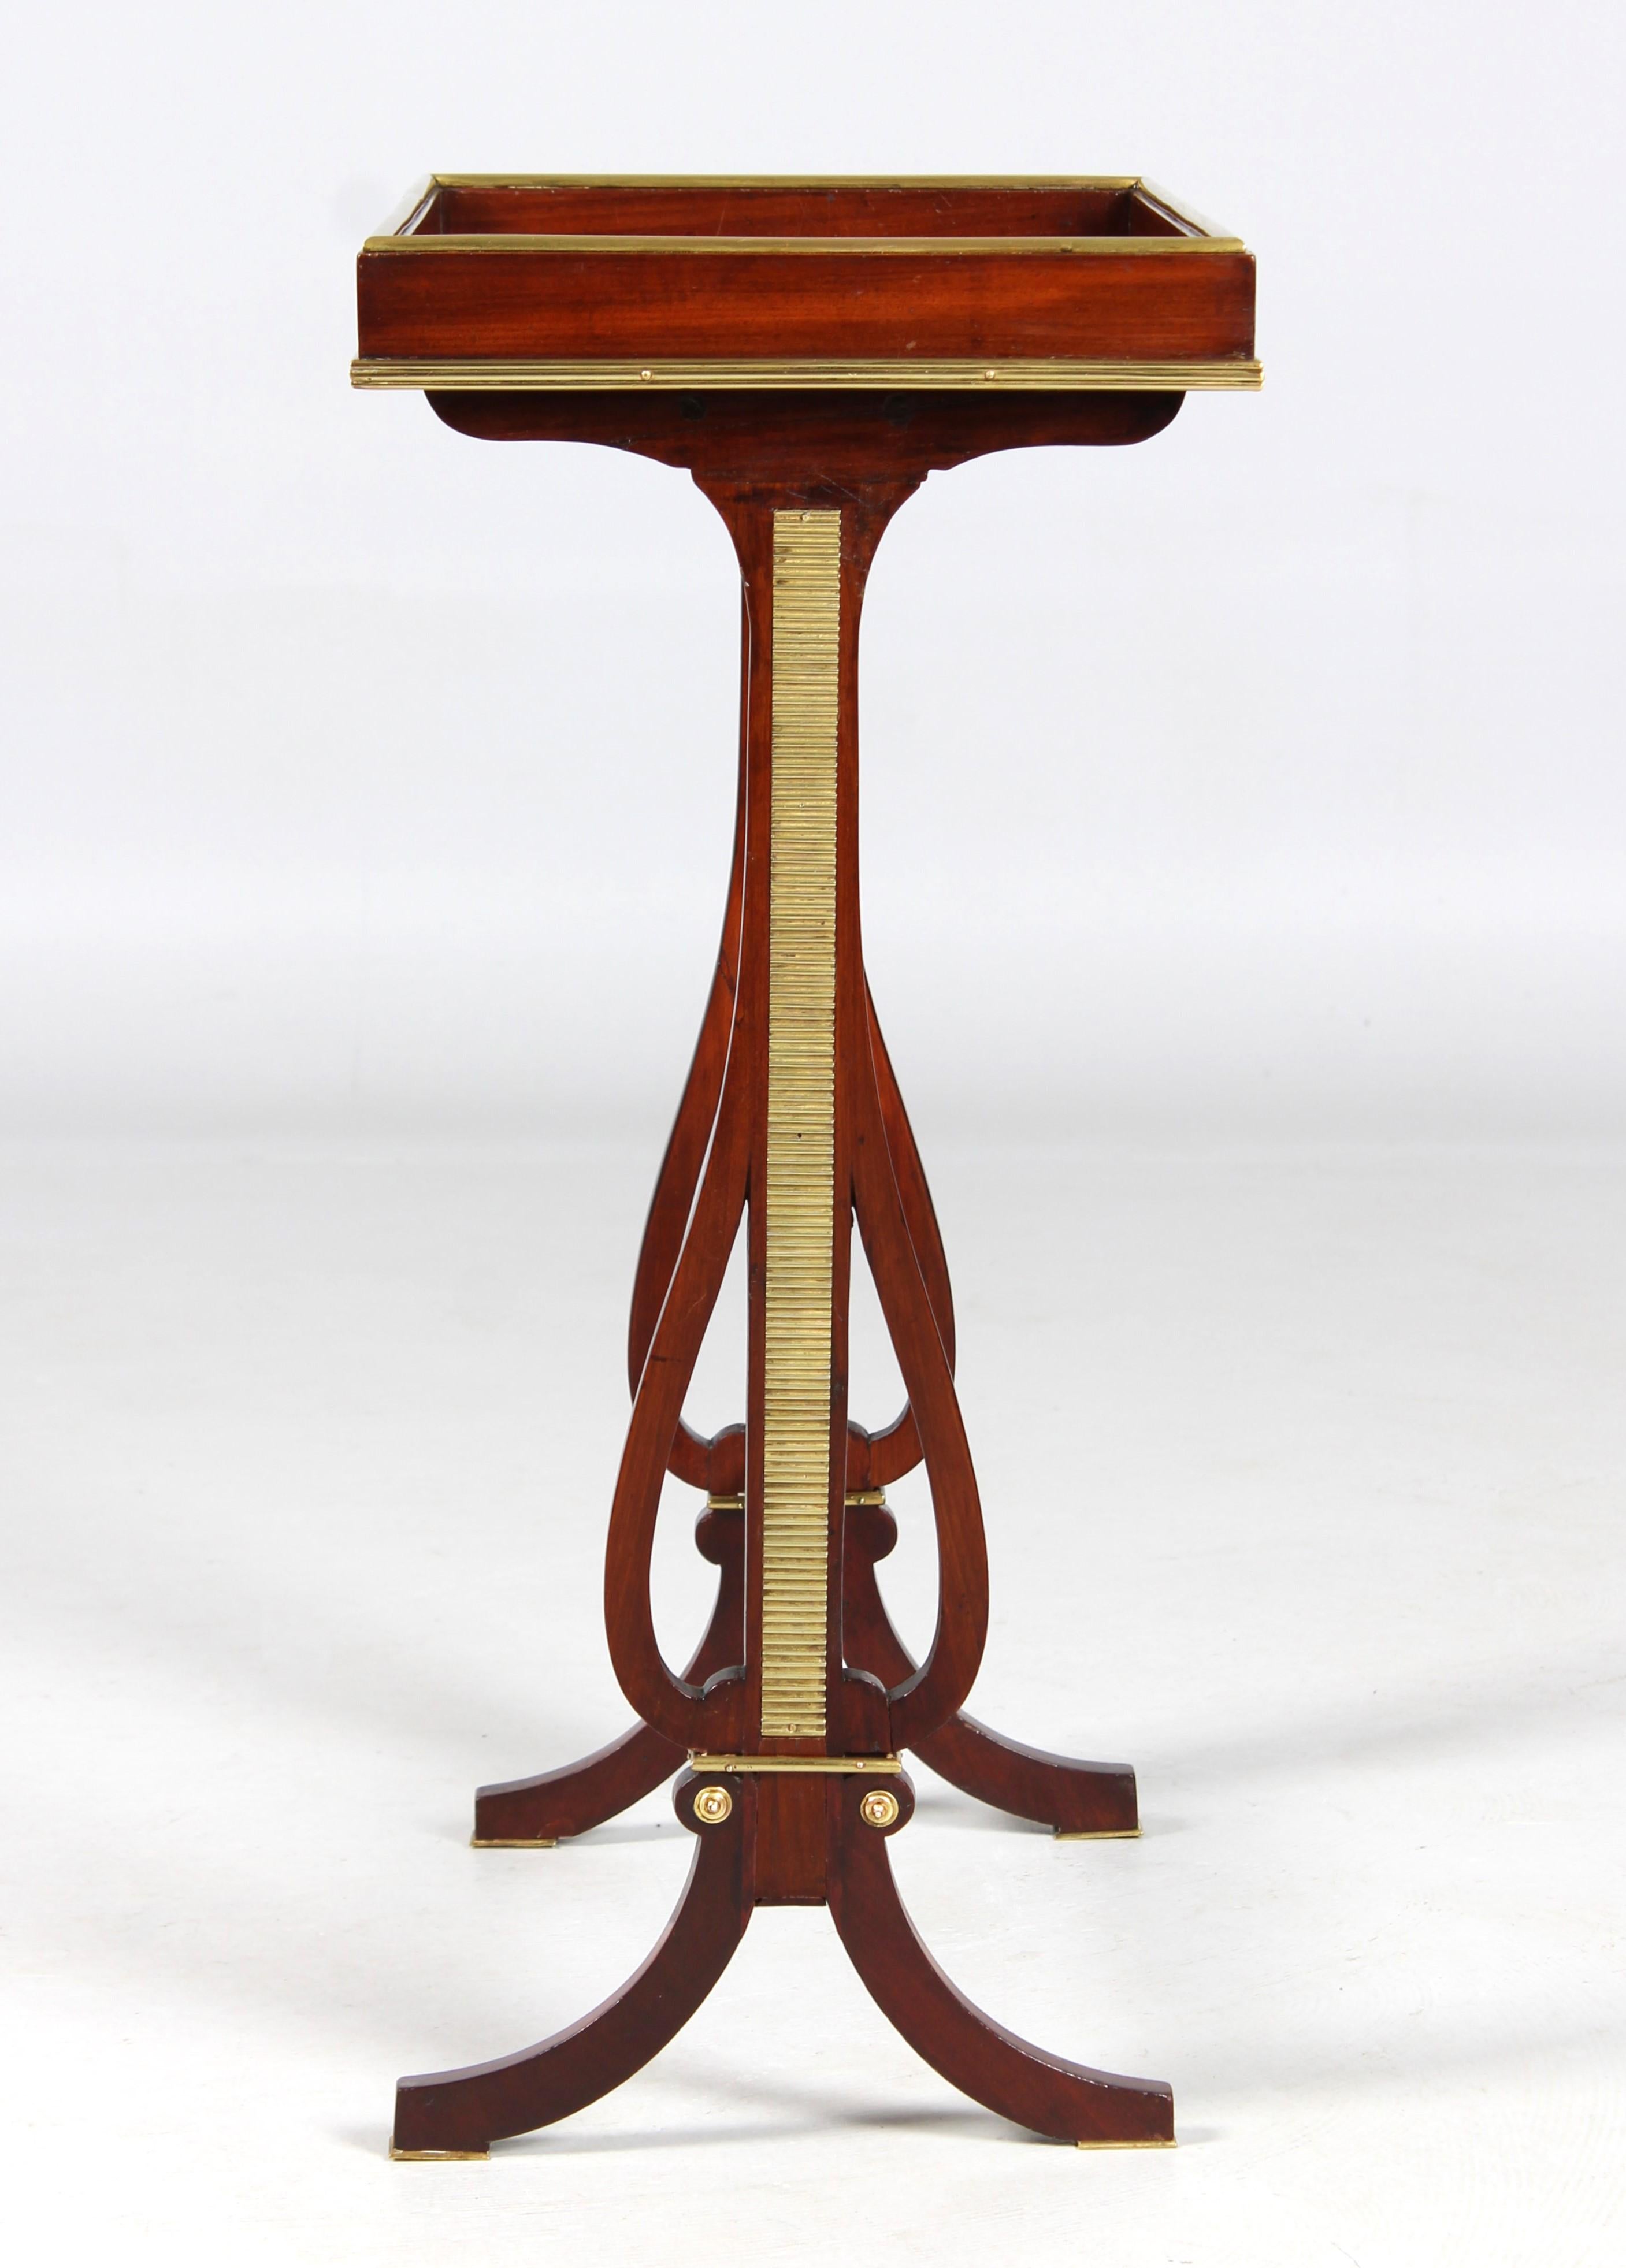 Table d'appoint Louis XVI - dite Vide-Poche

Paris
Acajou, laiton, bronze doré
vers 1785

Dimensions : H x L x P : 72 x 50 x 33 cm : H x L x P : 72 x 50 x 33 cm

Description :
Deux lyres en filigrane avec des plaques en damier encastrées, moulées et